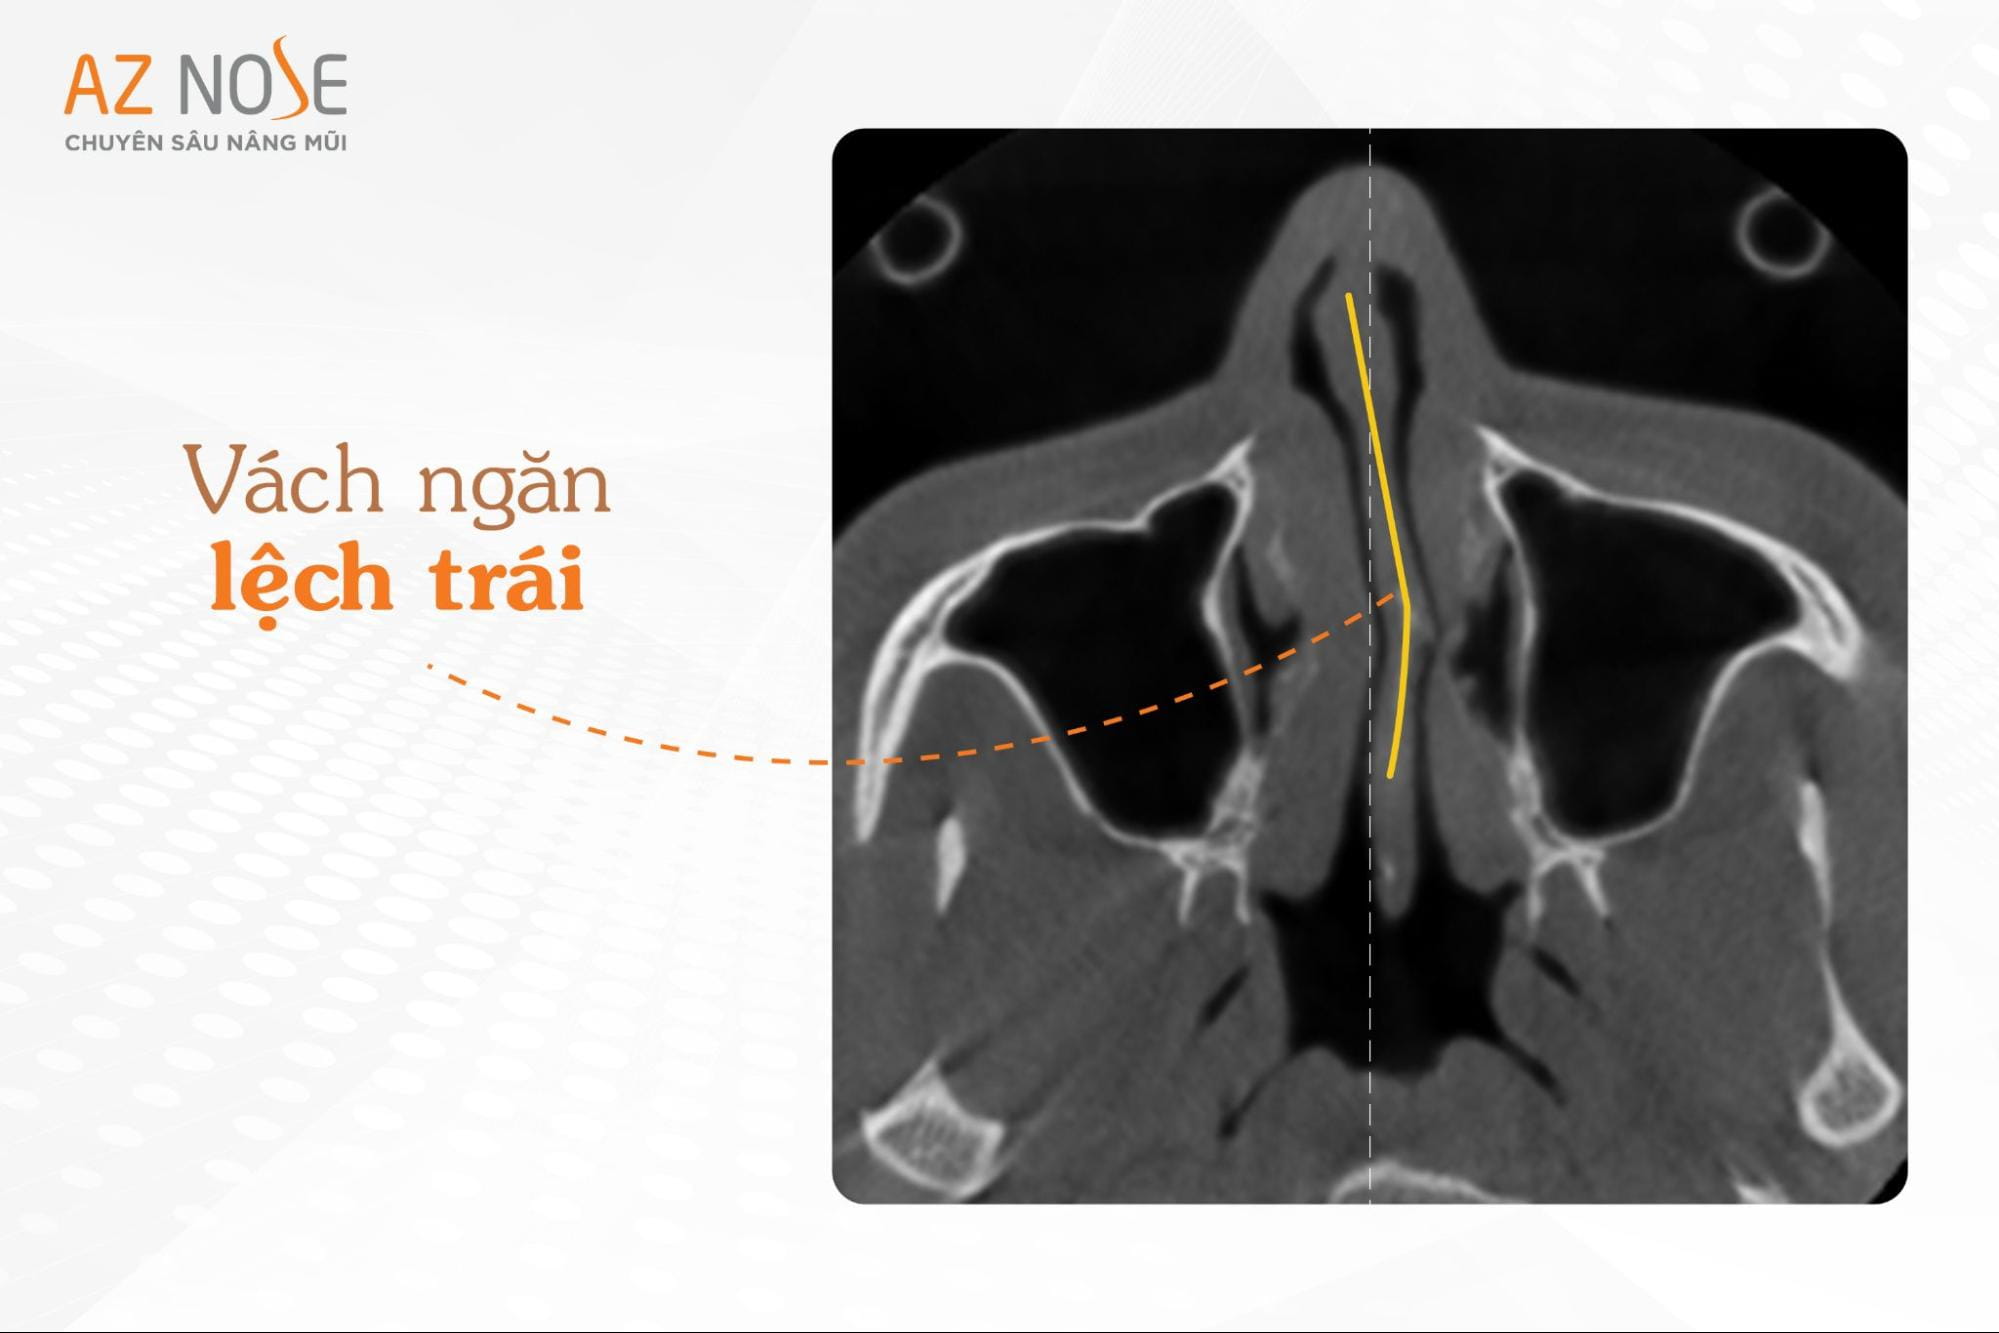 Vách ngăn lệch trái sâu của khách hàng Đ.T.T.O trên hình chụp CT 3D